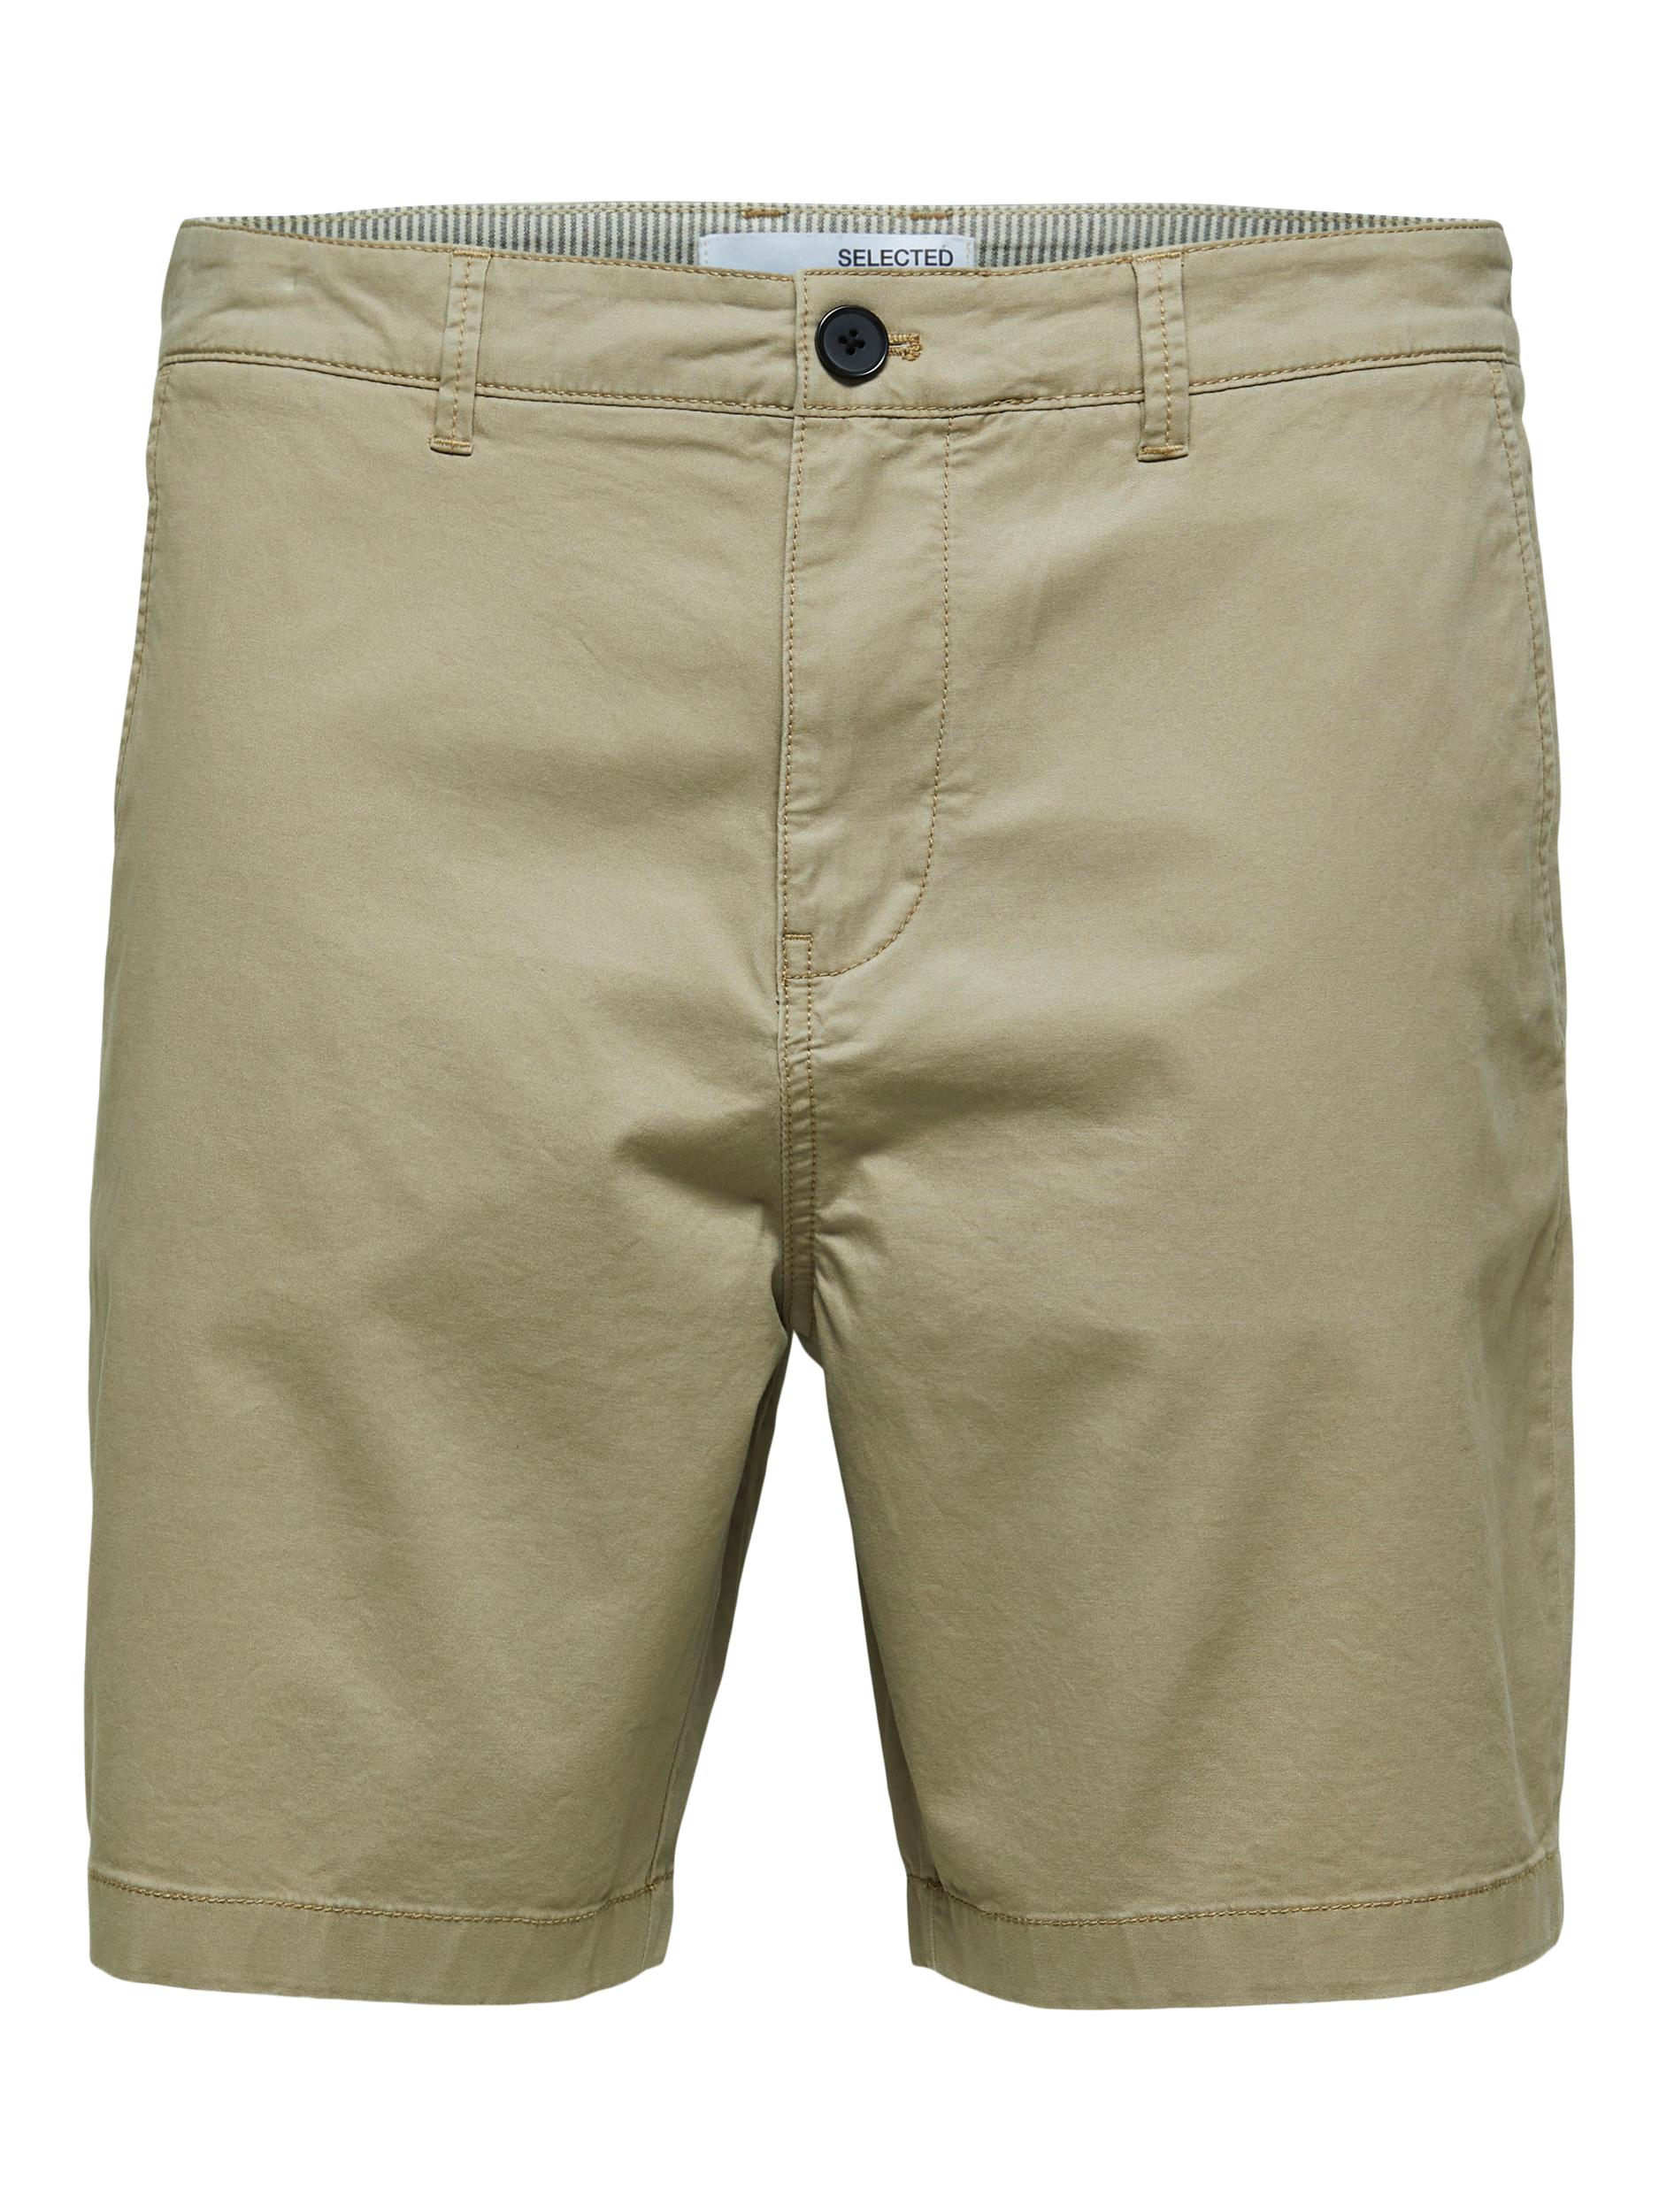  Comfort Flex Shorts